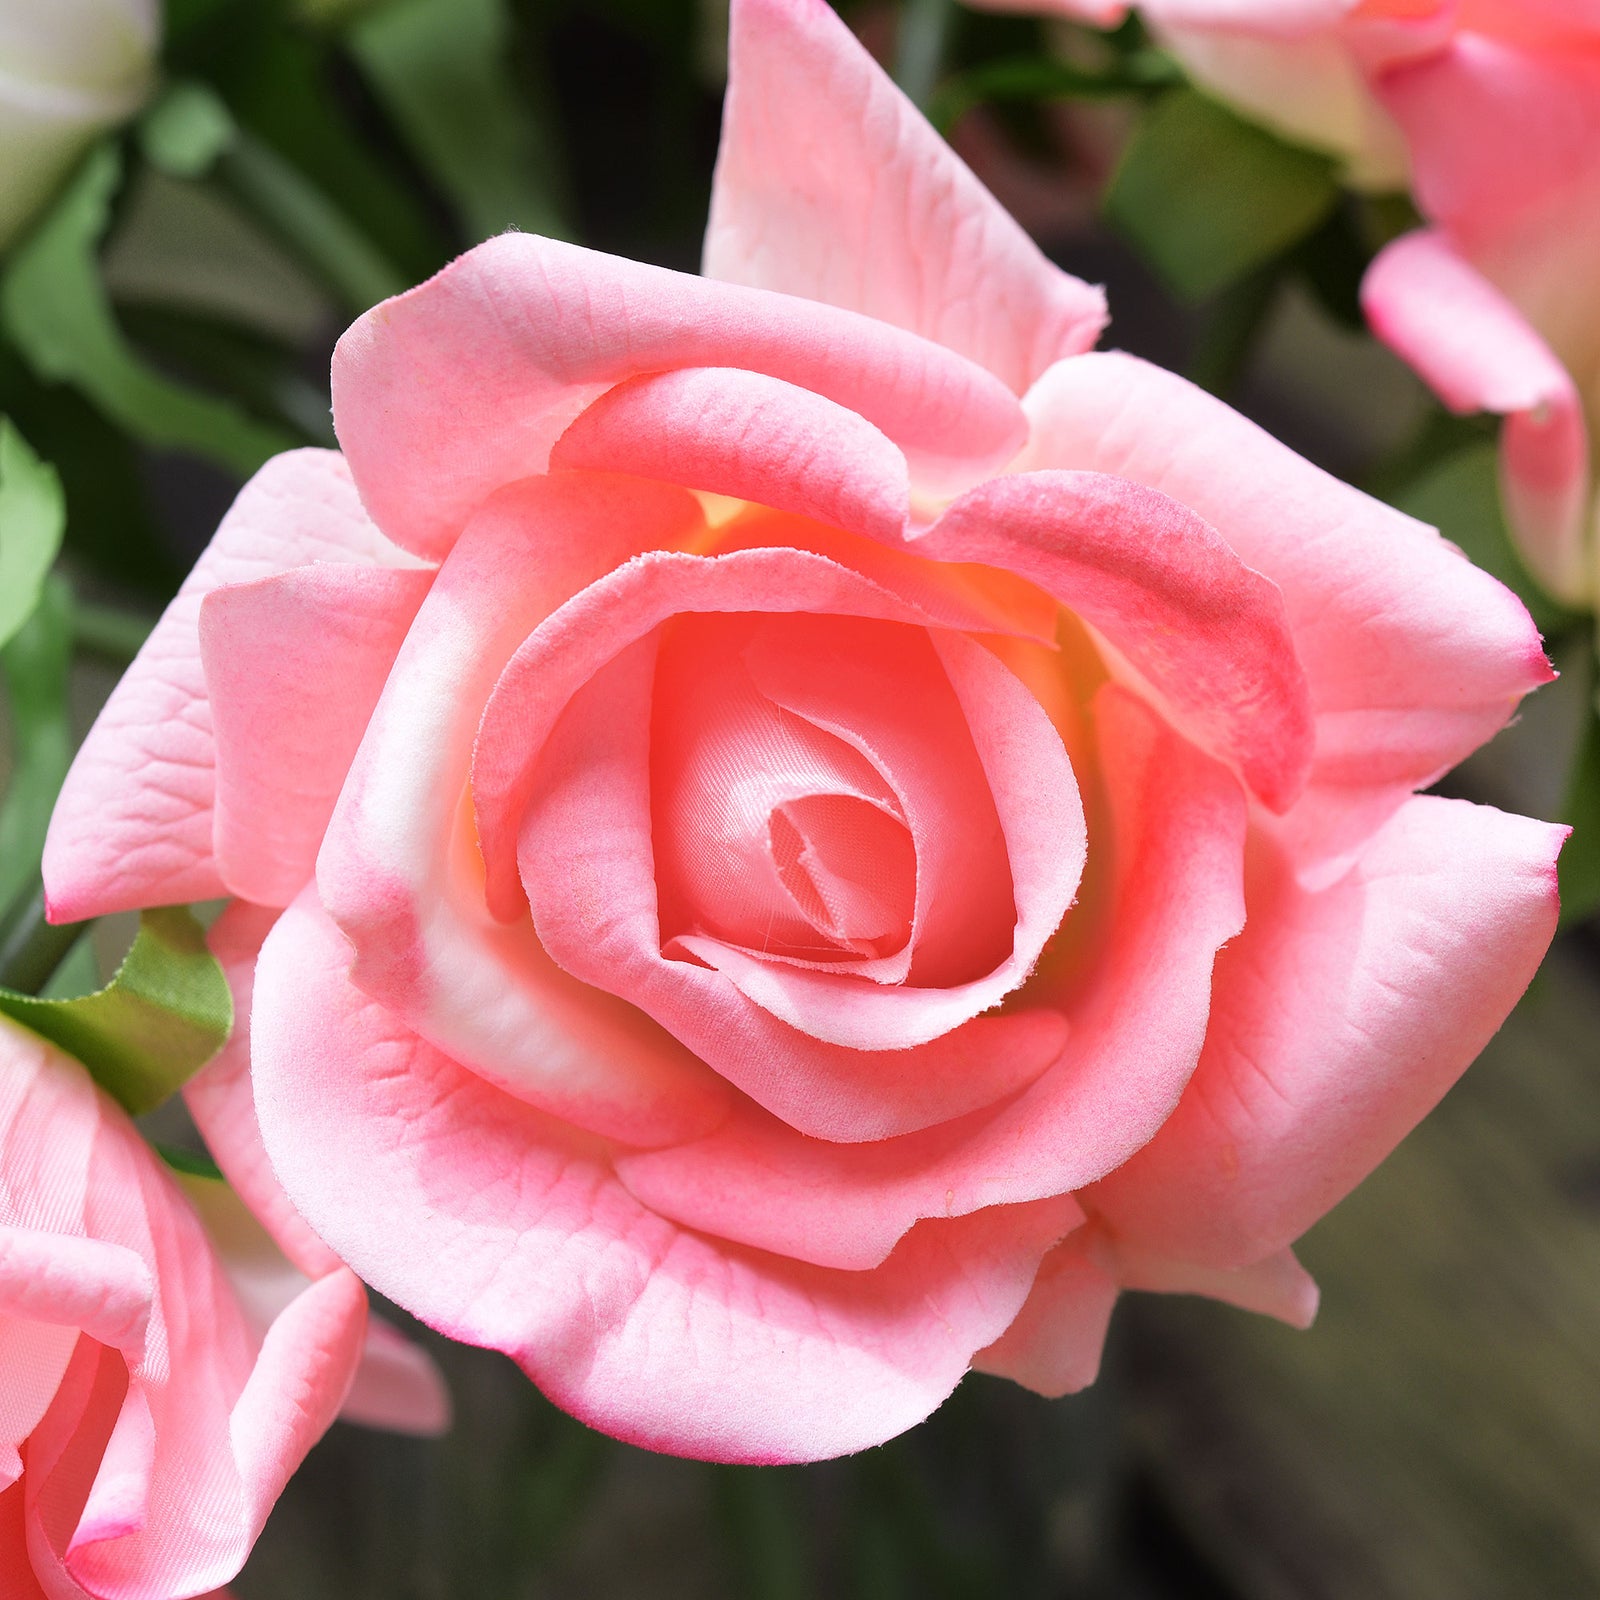 FiveSeasonStuff Watermelon Pink Real Touch Garden Rose Artificial Flowers Wedding, Bridal, Home Décor 5 Stems 9.8"